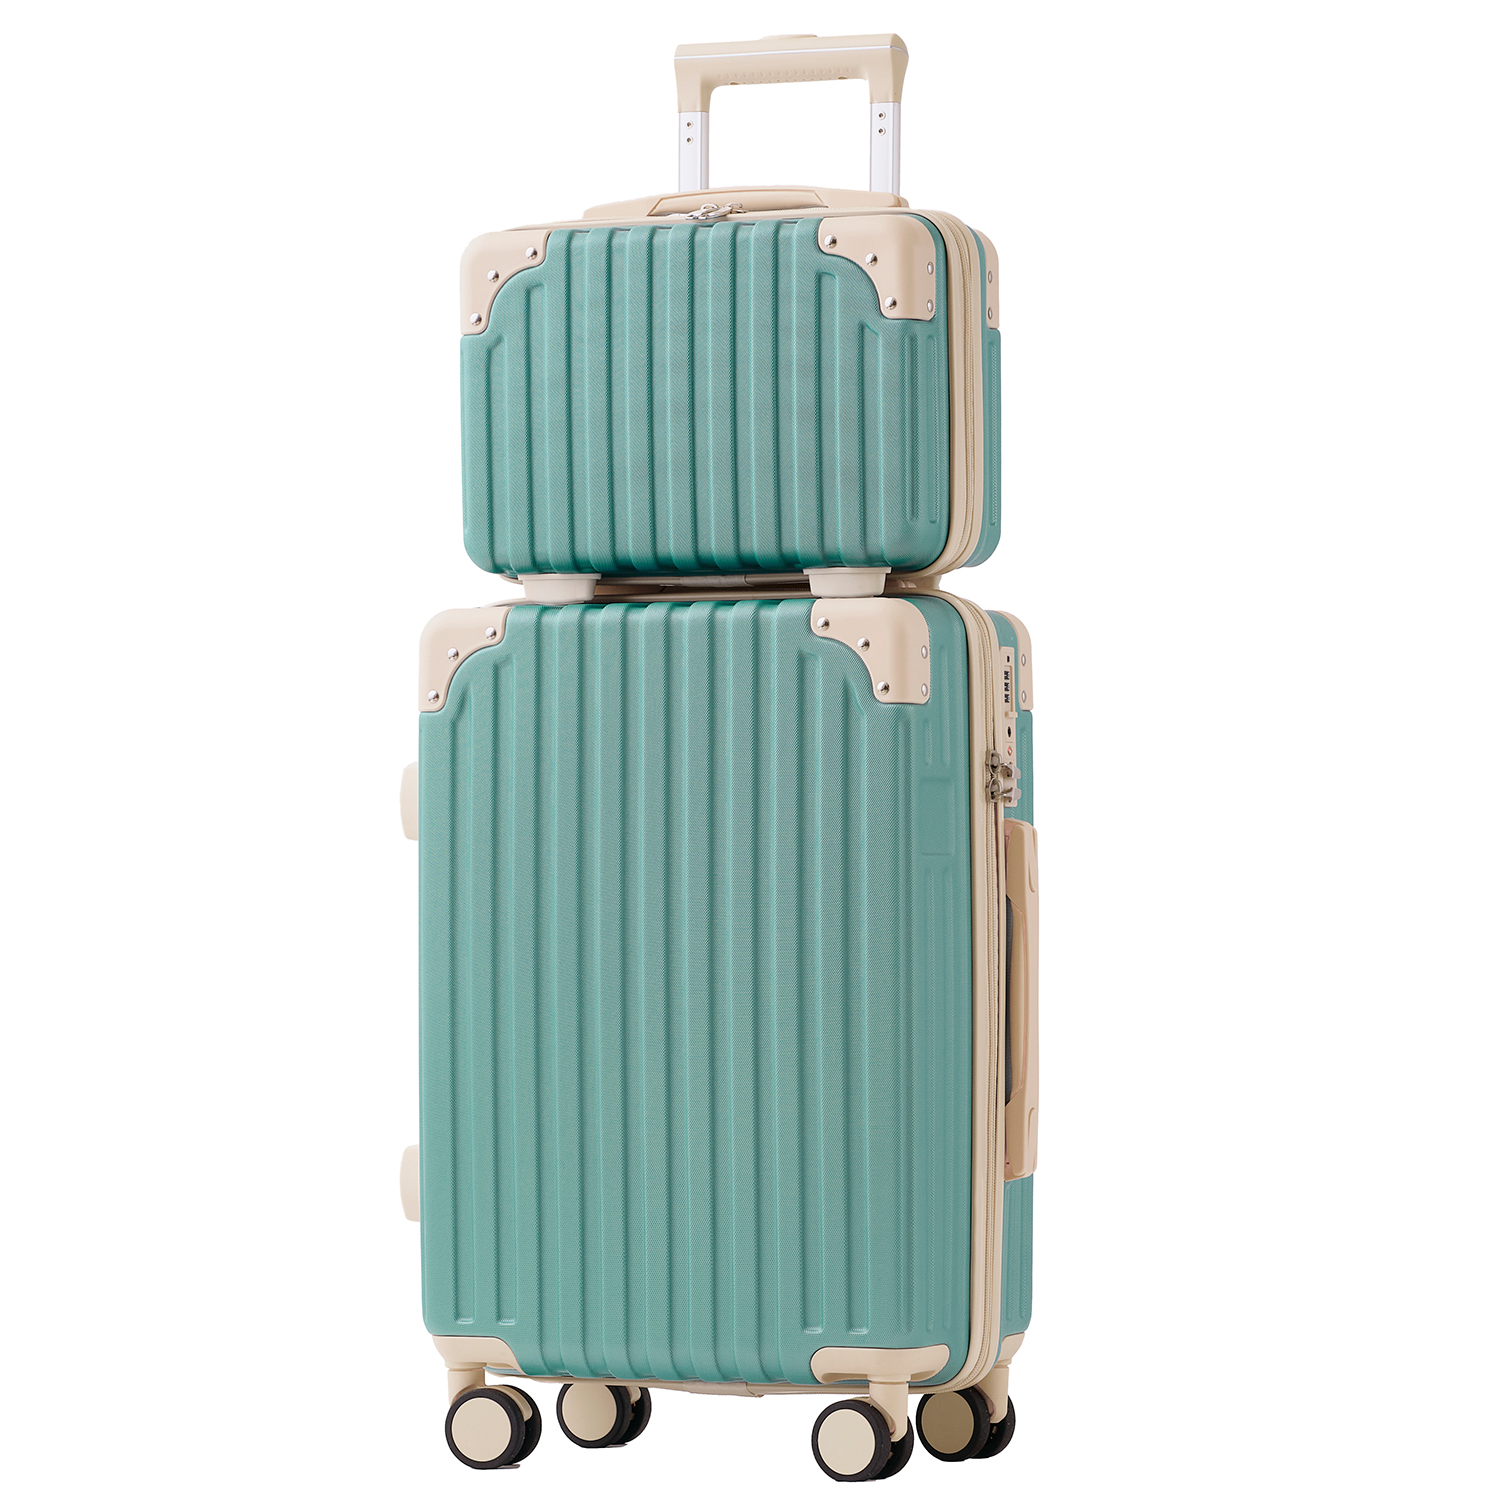 スーツケース Sサイズ キャリーケース キャリーバッグ sサイズ 機内持込可能 親子セットRIOU TSAロック かわいい 軽量 1〜3泊用 41L